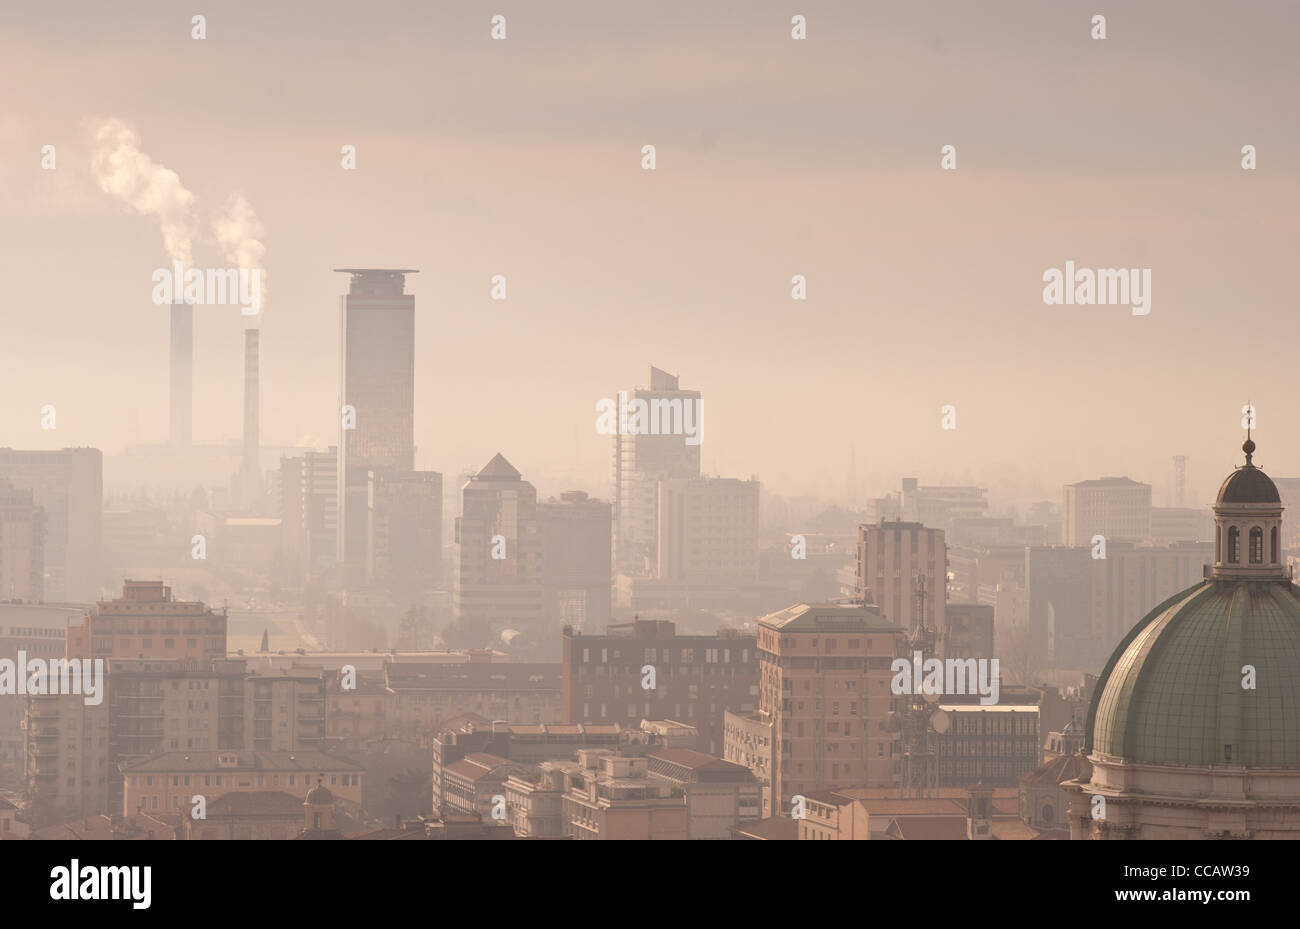 Skyline de la ville avec smokestaks et le smog Banque D'Images